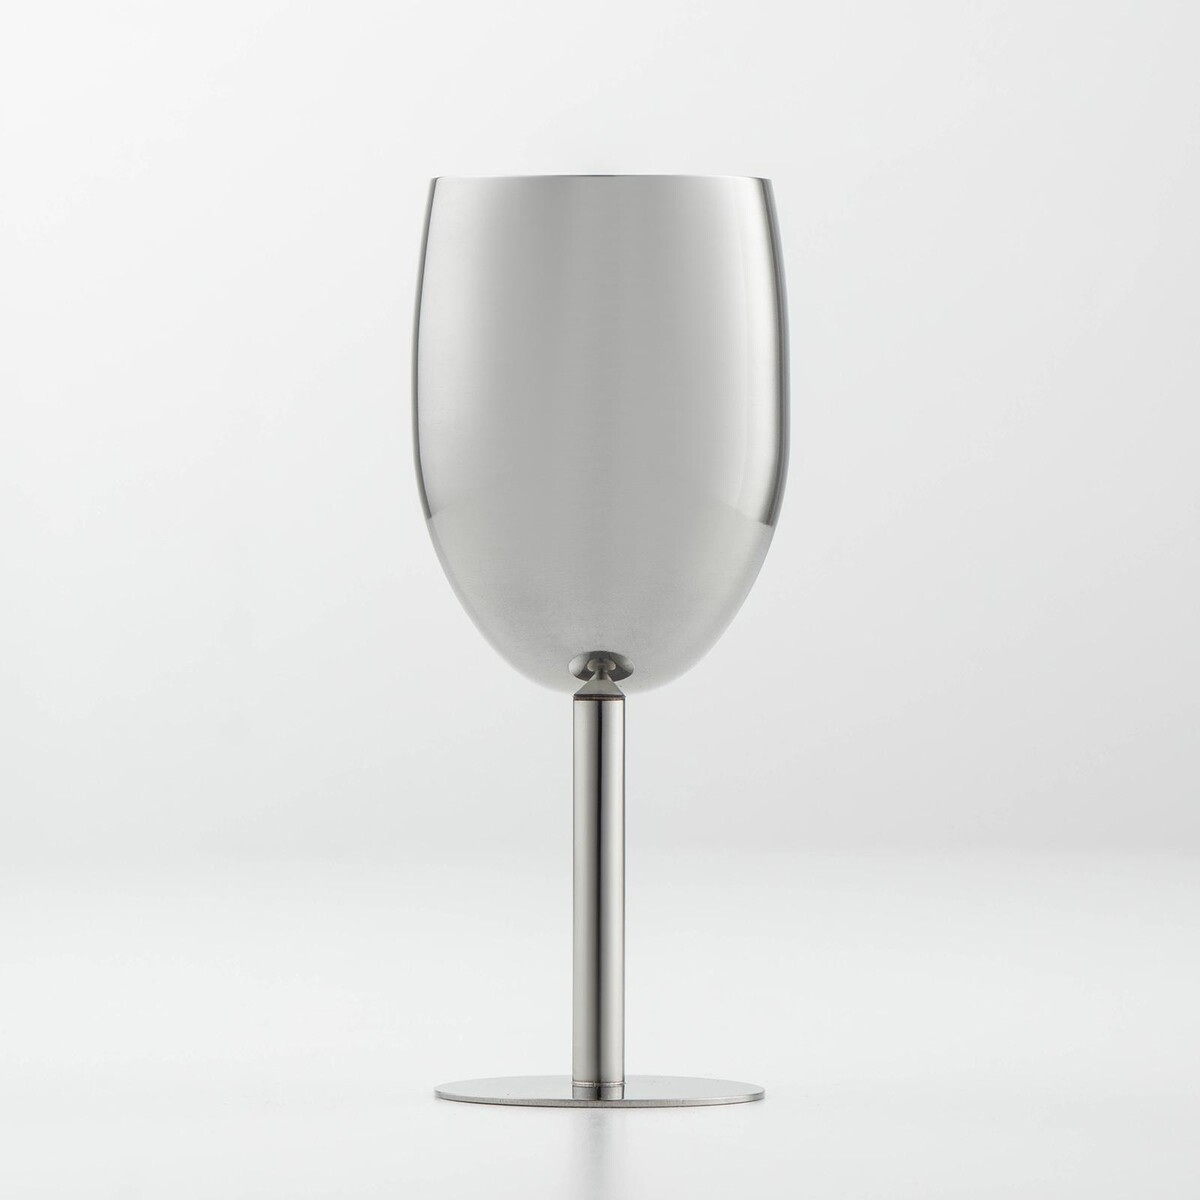 Бокал винный из нержавеющей стали для коктейлей, 17×7 см, цвет хромированный бокал для вина 350 мл стекло 6 шт glasstar васильковый 9 rnvs 1819 9